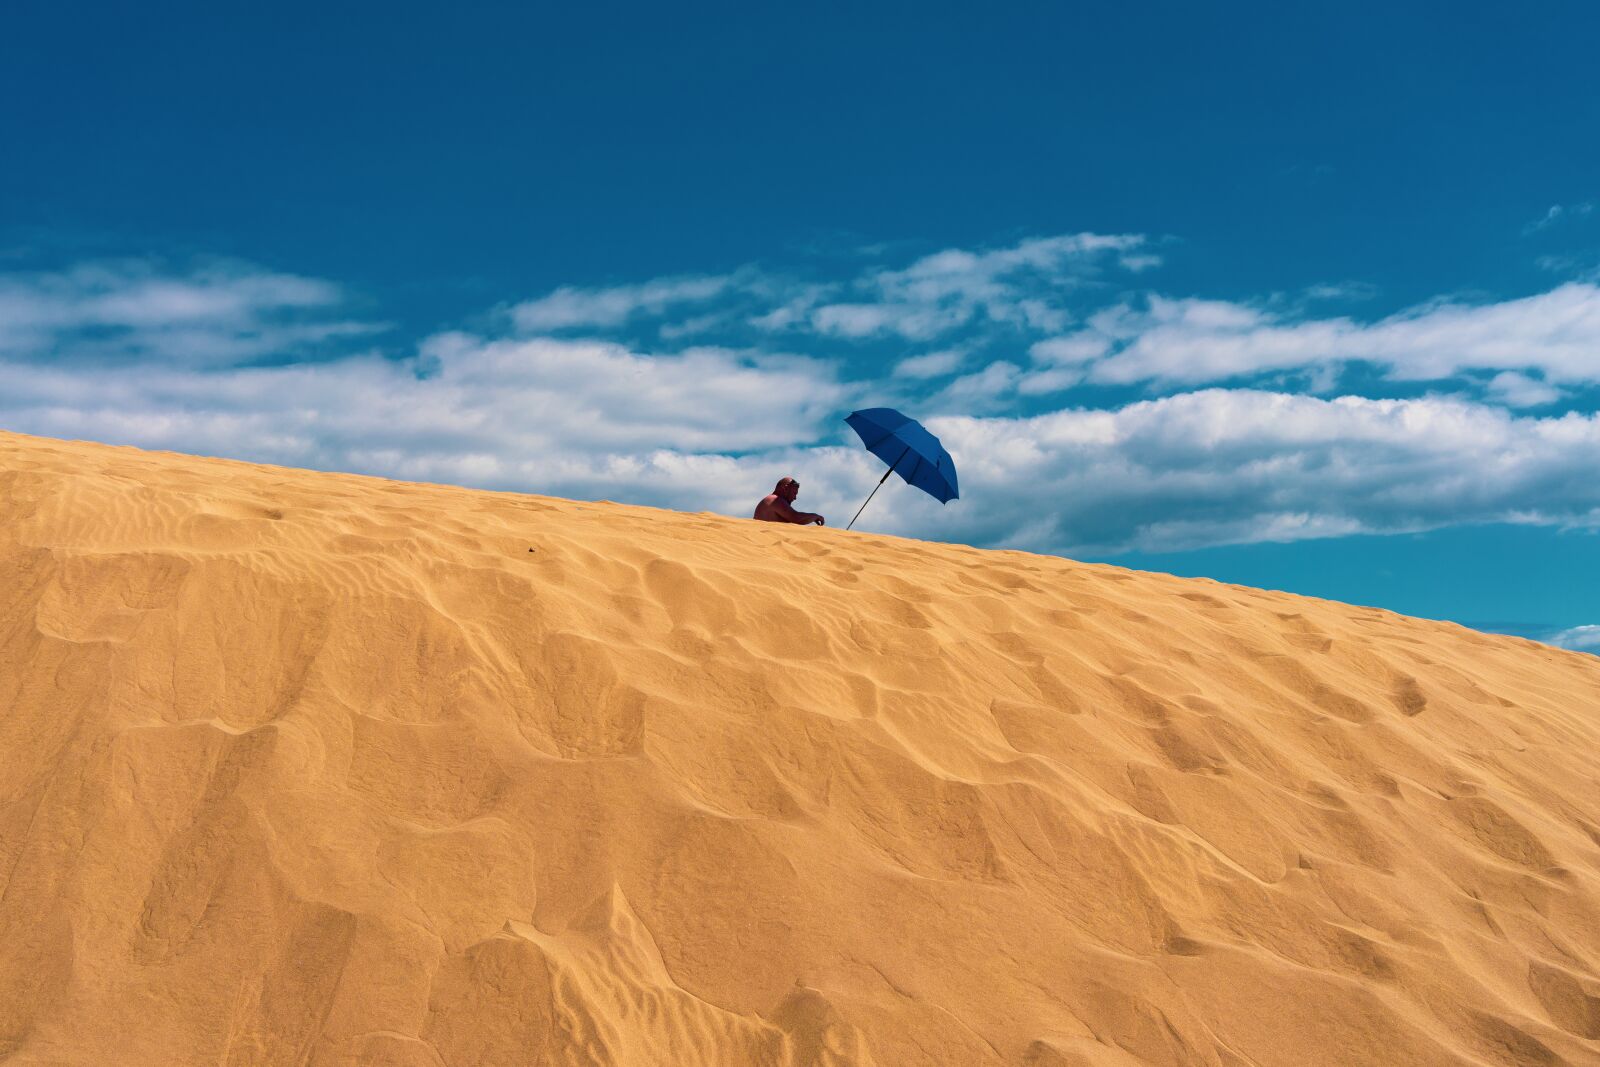 Samyang AF 35mm F2.8 FE sample photo. Sand, dune, landscape photography